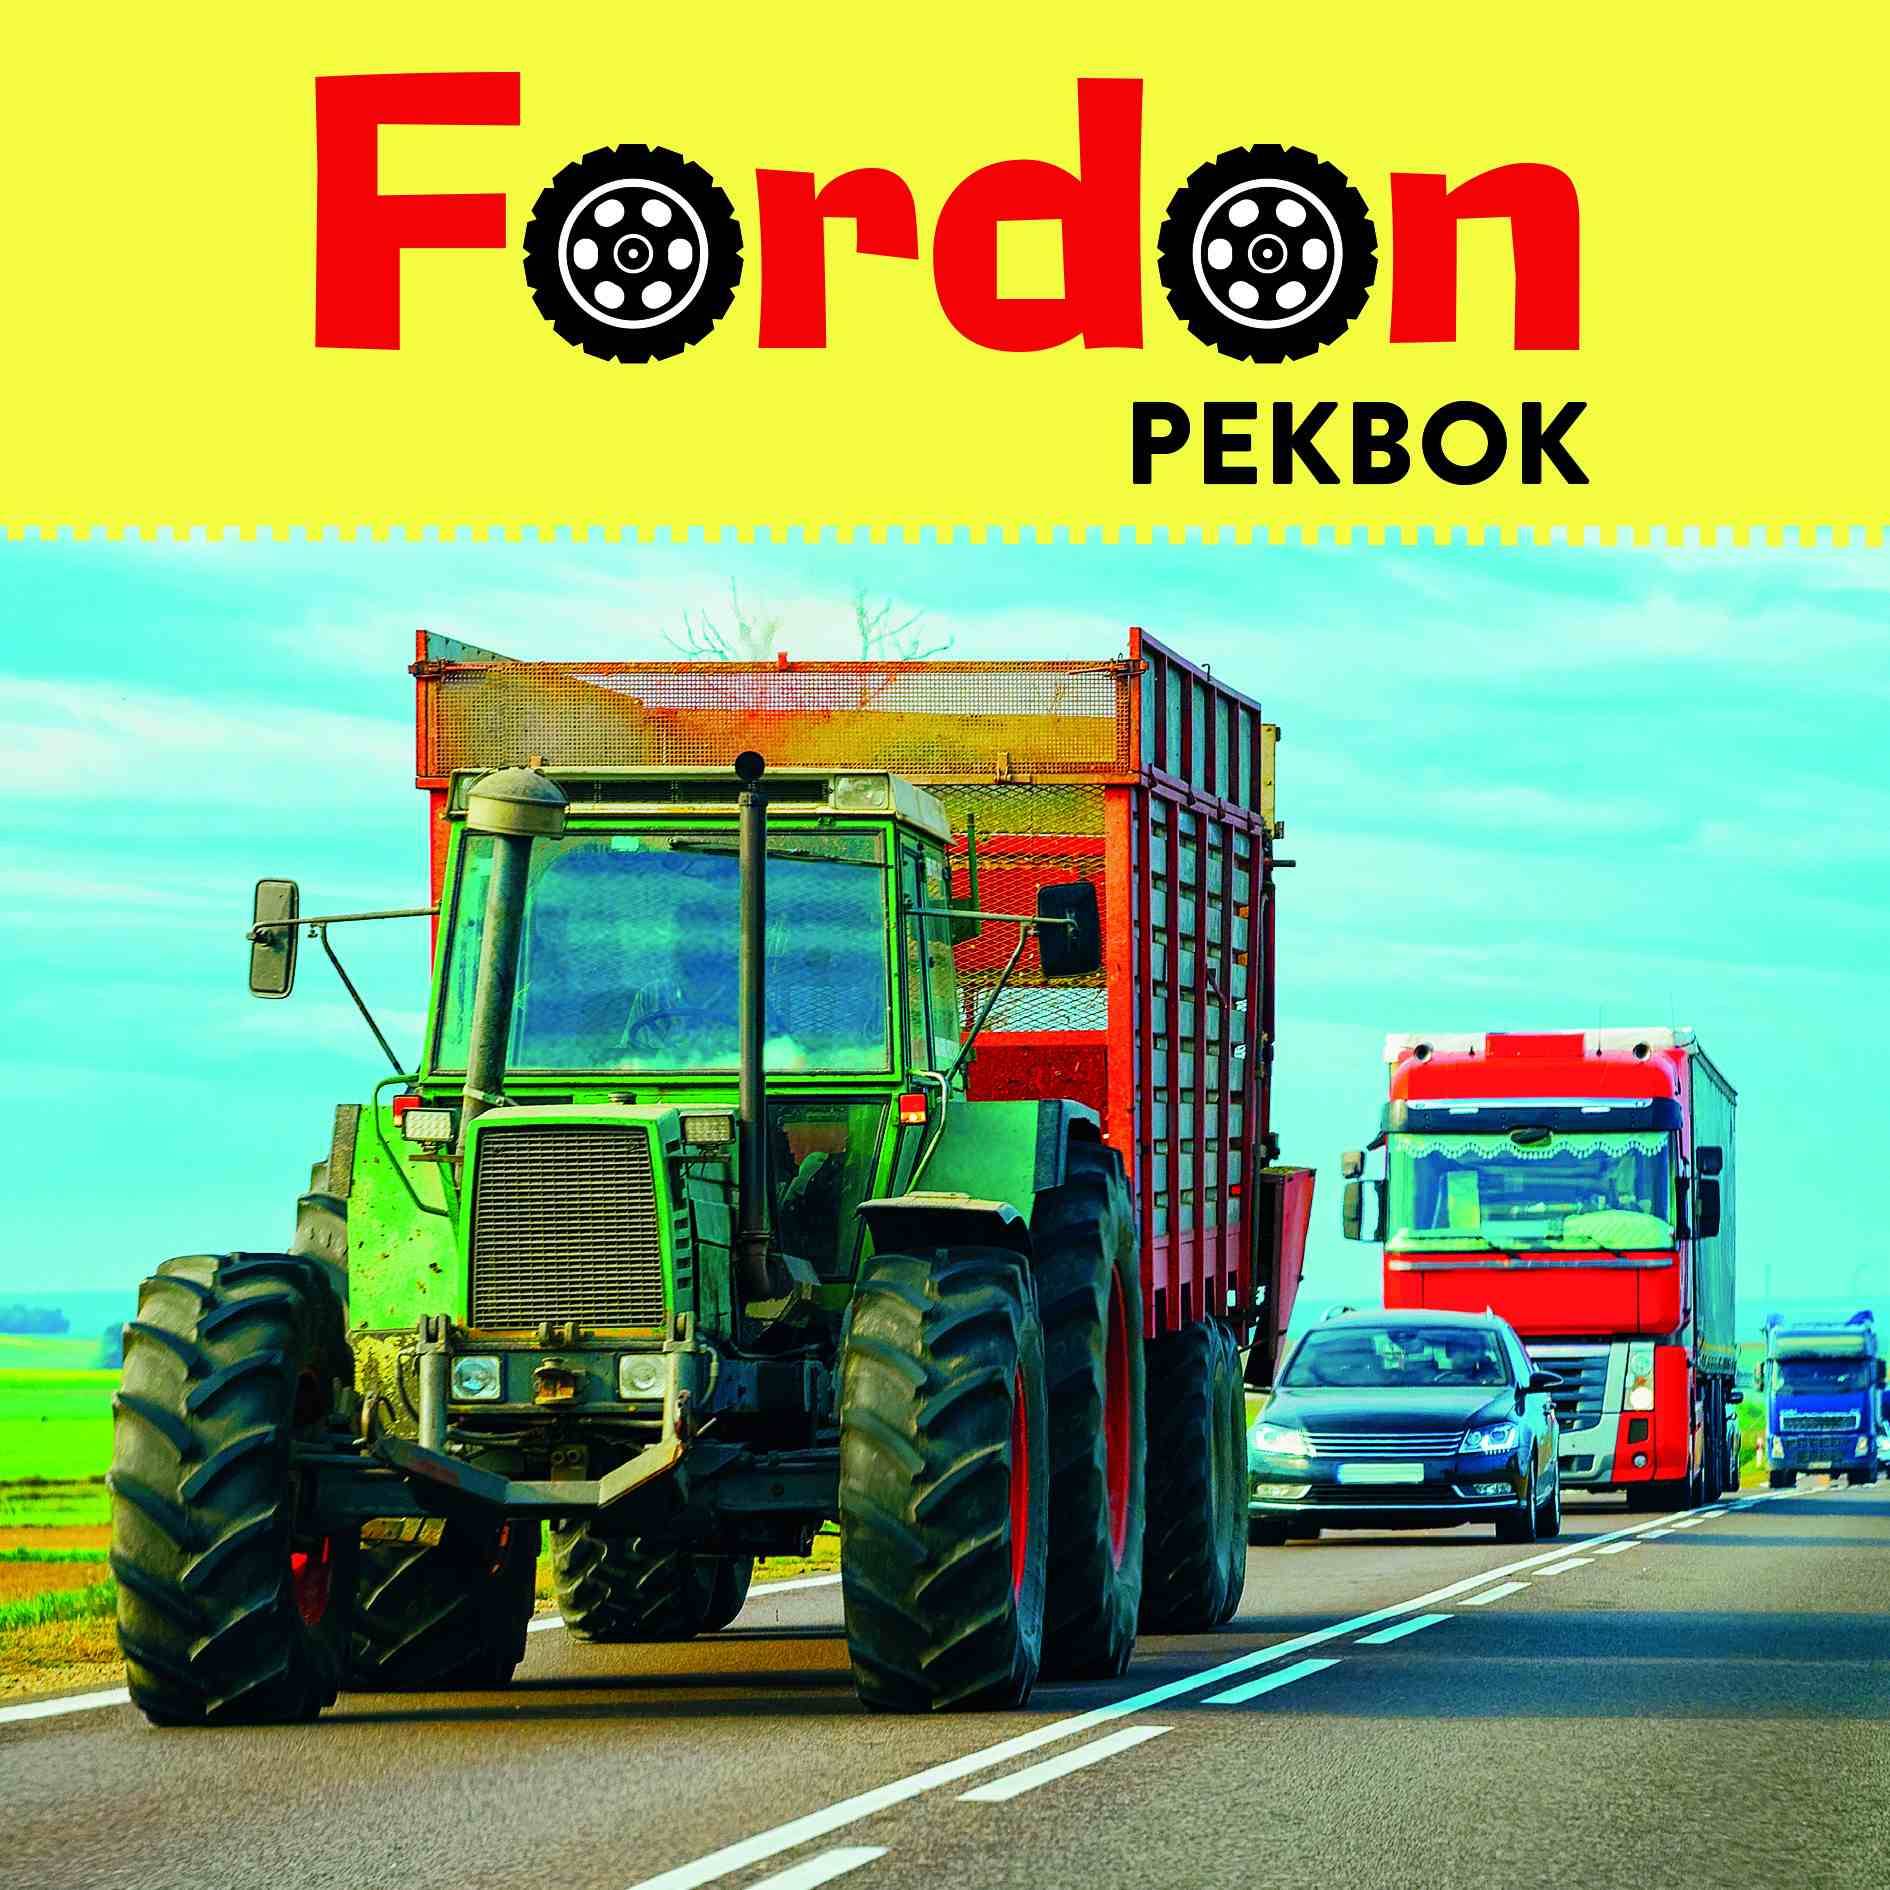 Fordon - Pekbok